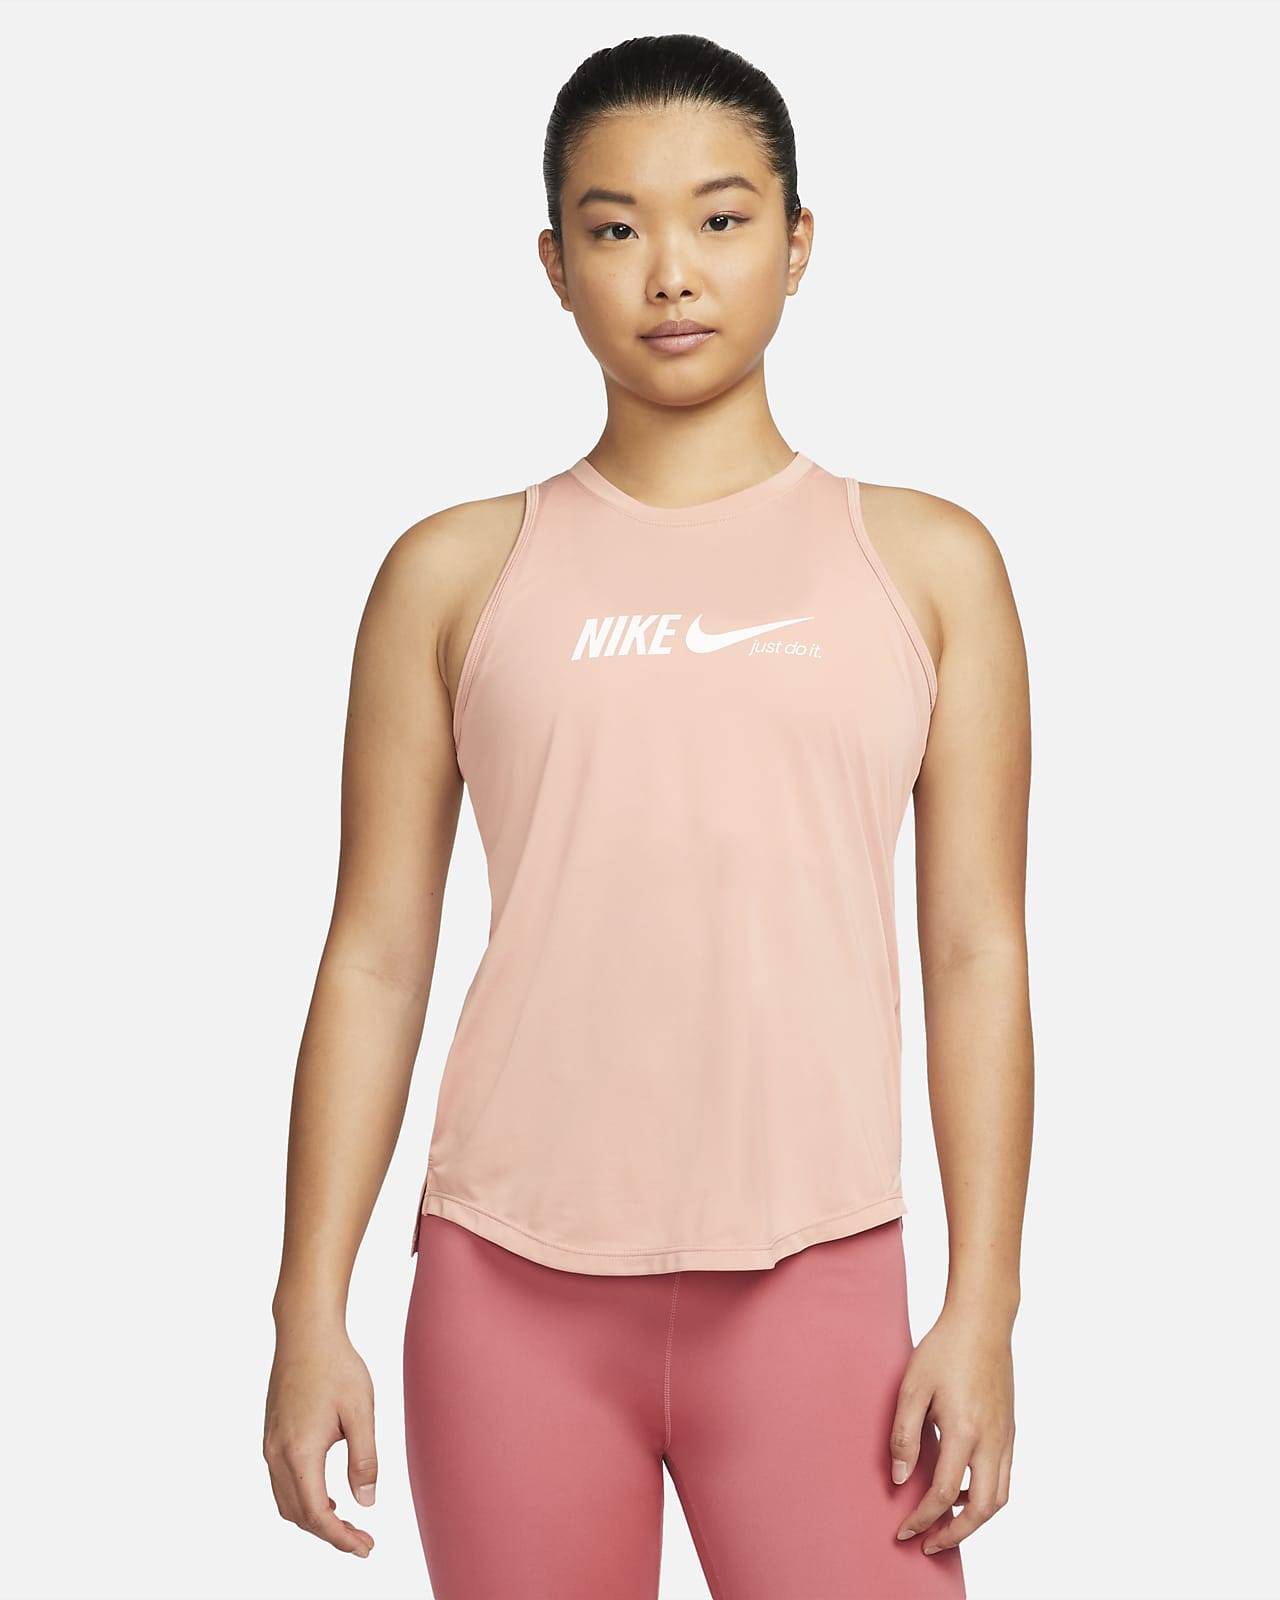 เสื้อกล้ามเทรนนิ่งผู้หญิงมีกราฟิก Nike Dri-FIT One